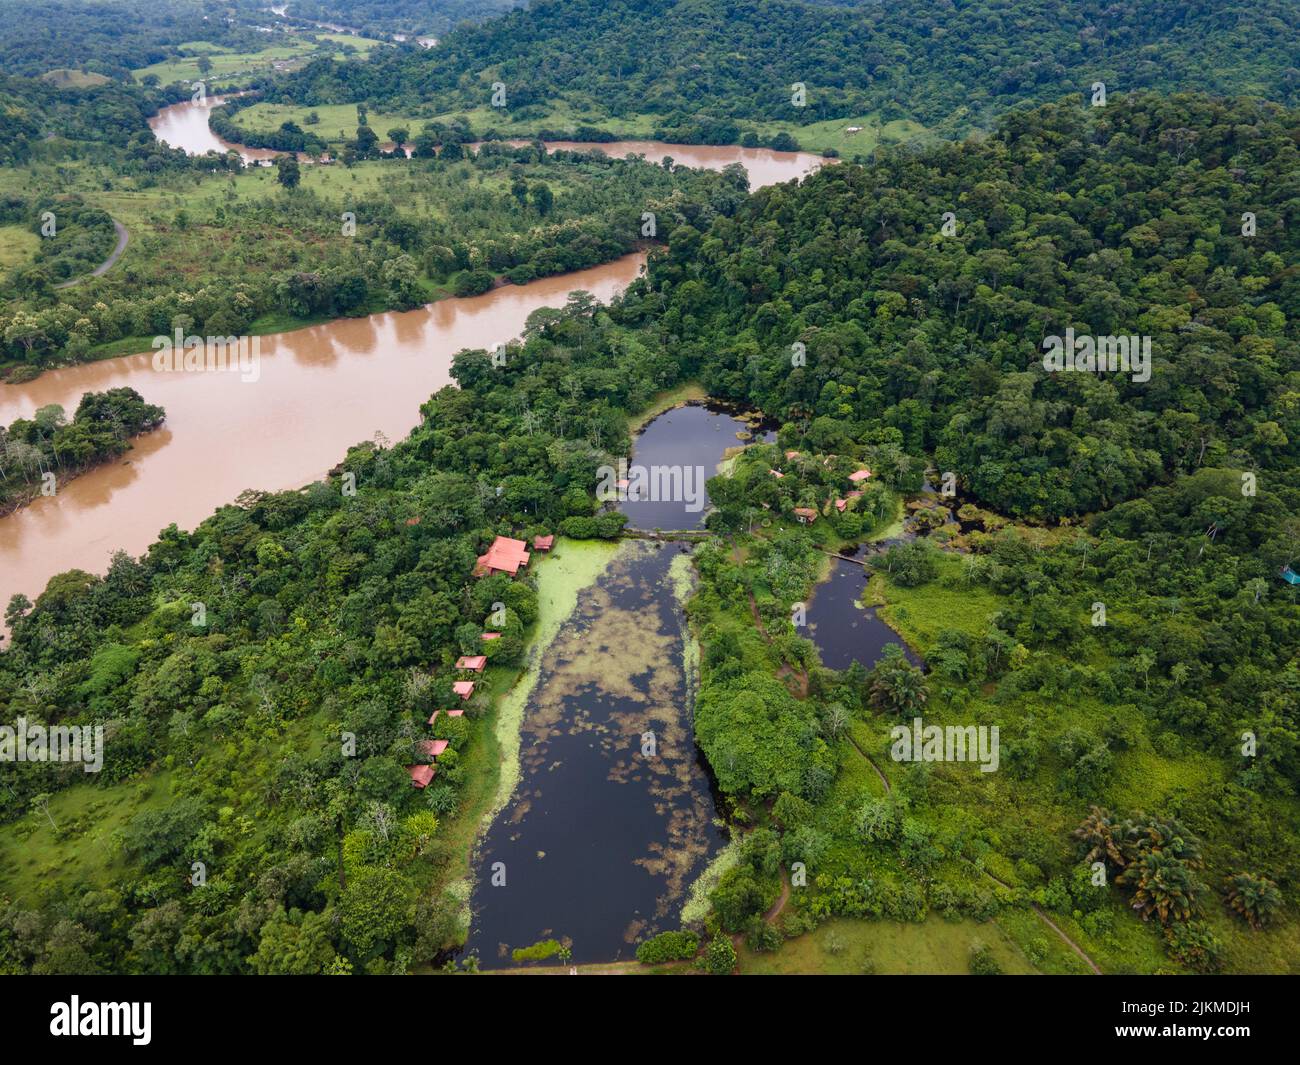 La hermosa vista aérea del río rodeado de bosque verde. Boca Tapada, Costa Rica. Foto de stock